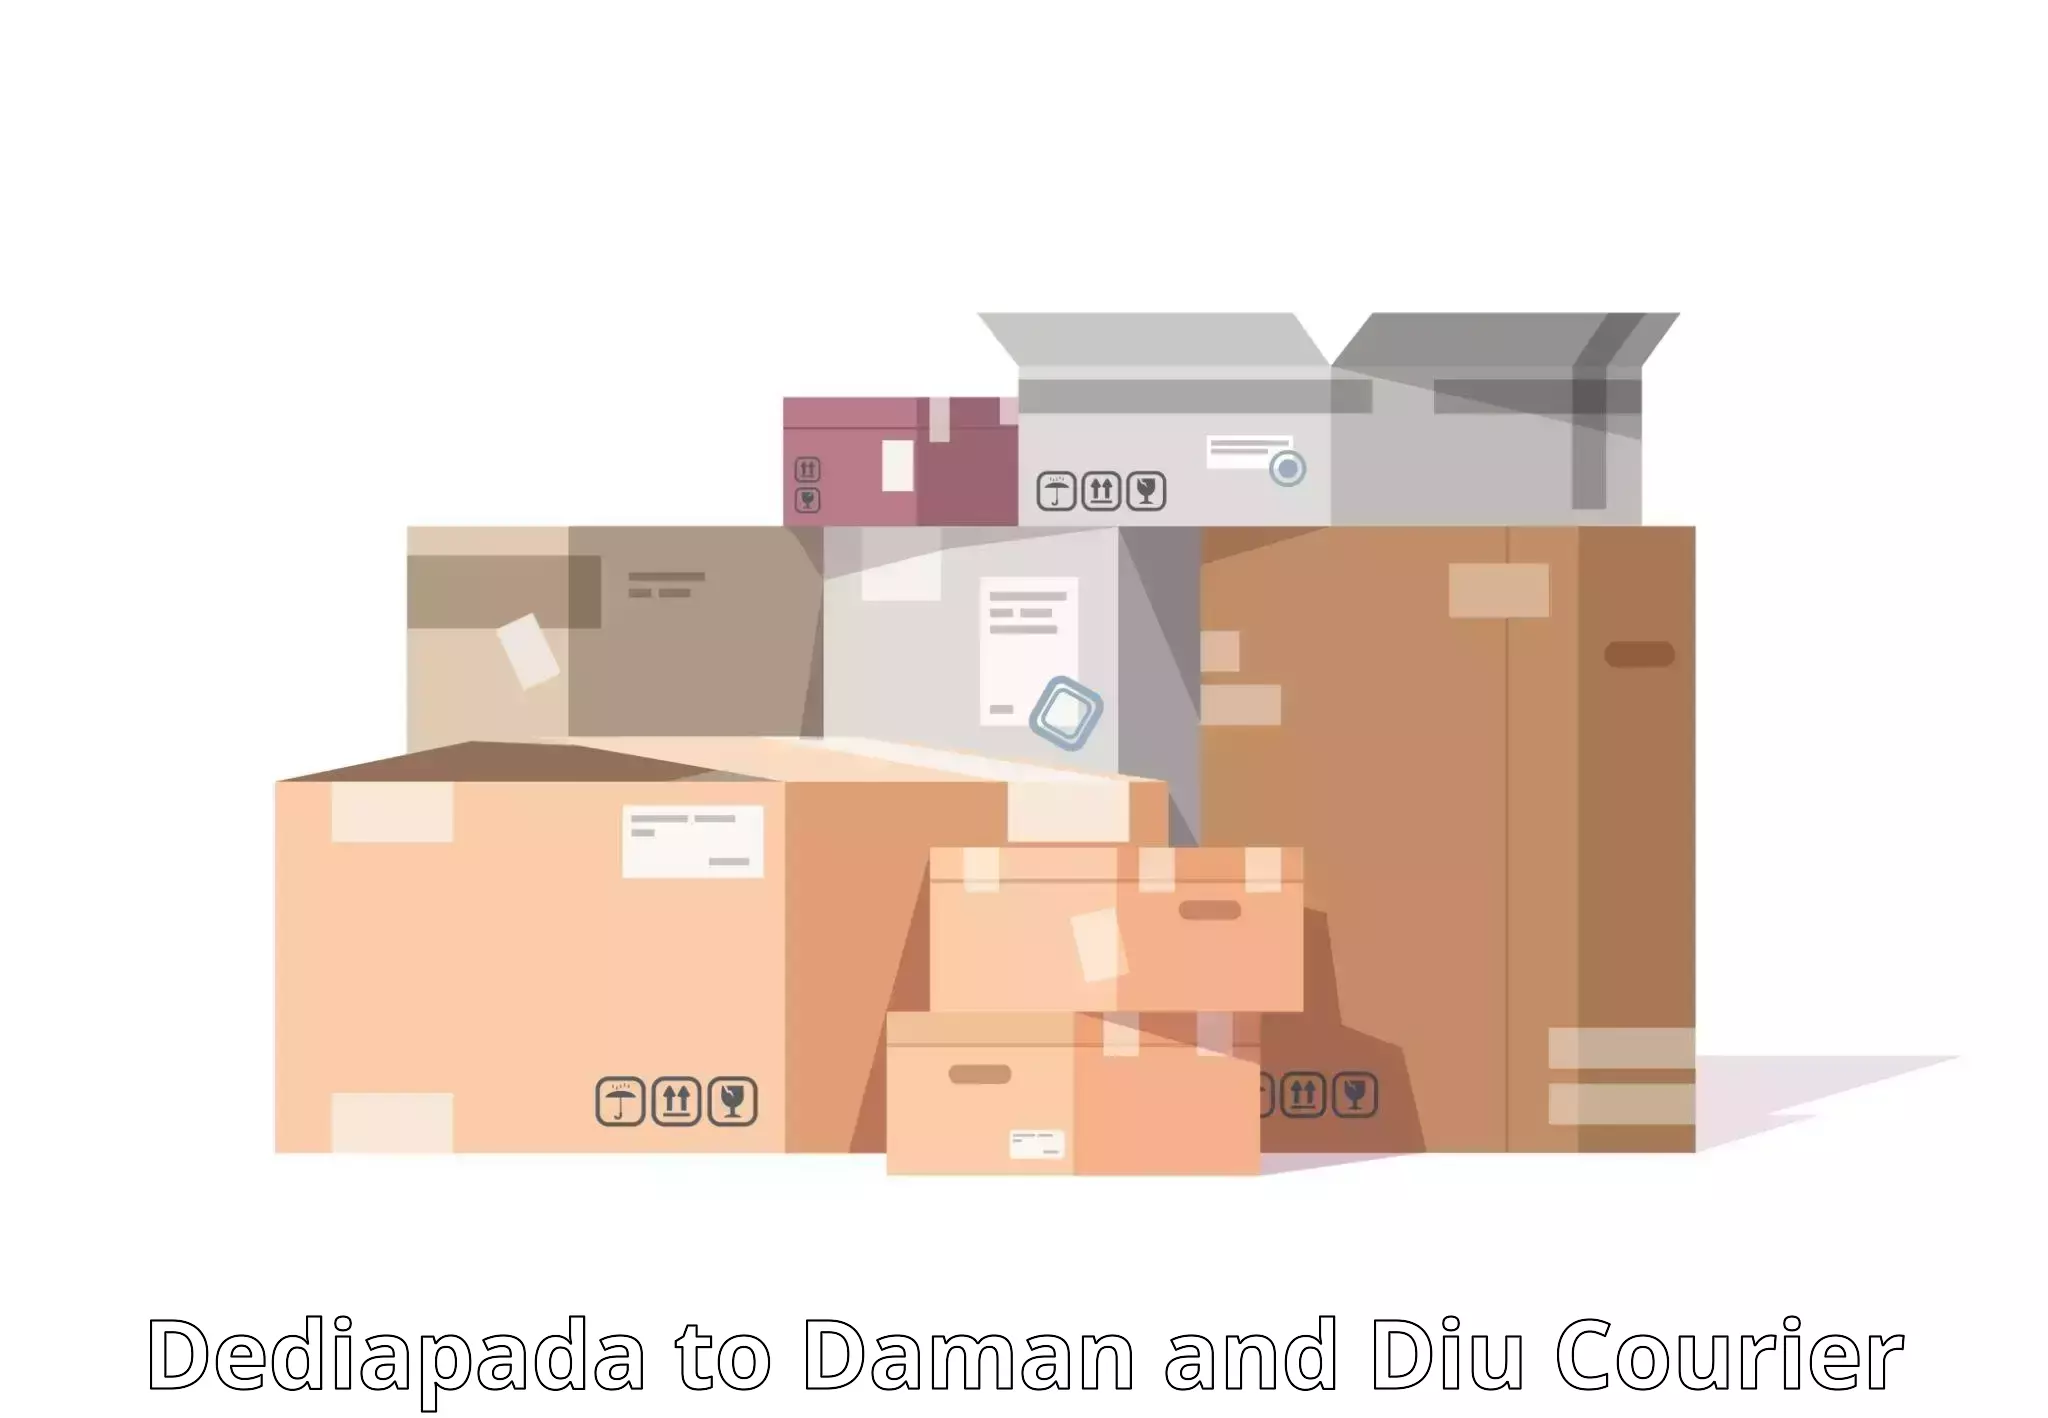 Logistics management Dediapada to Daman and Diu